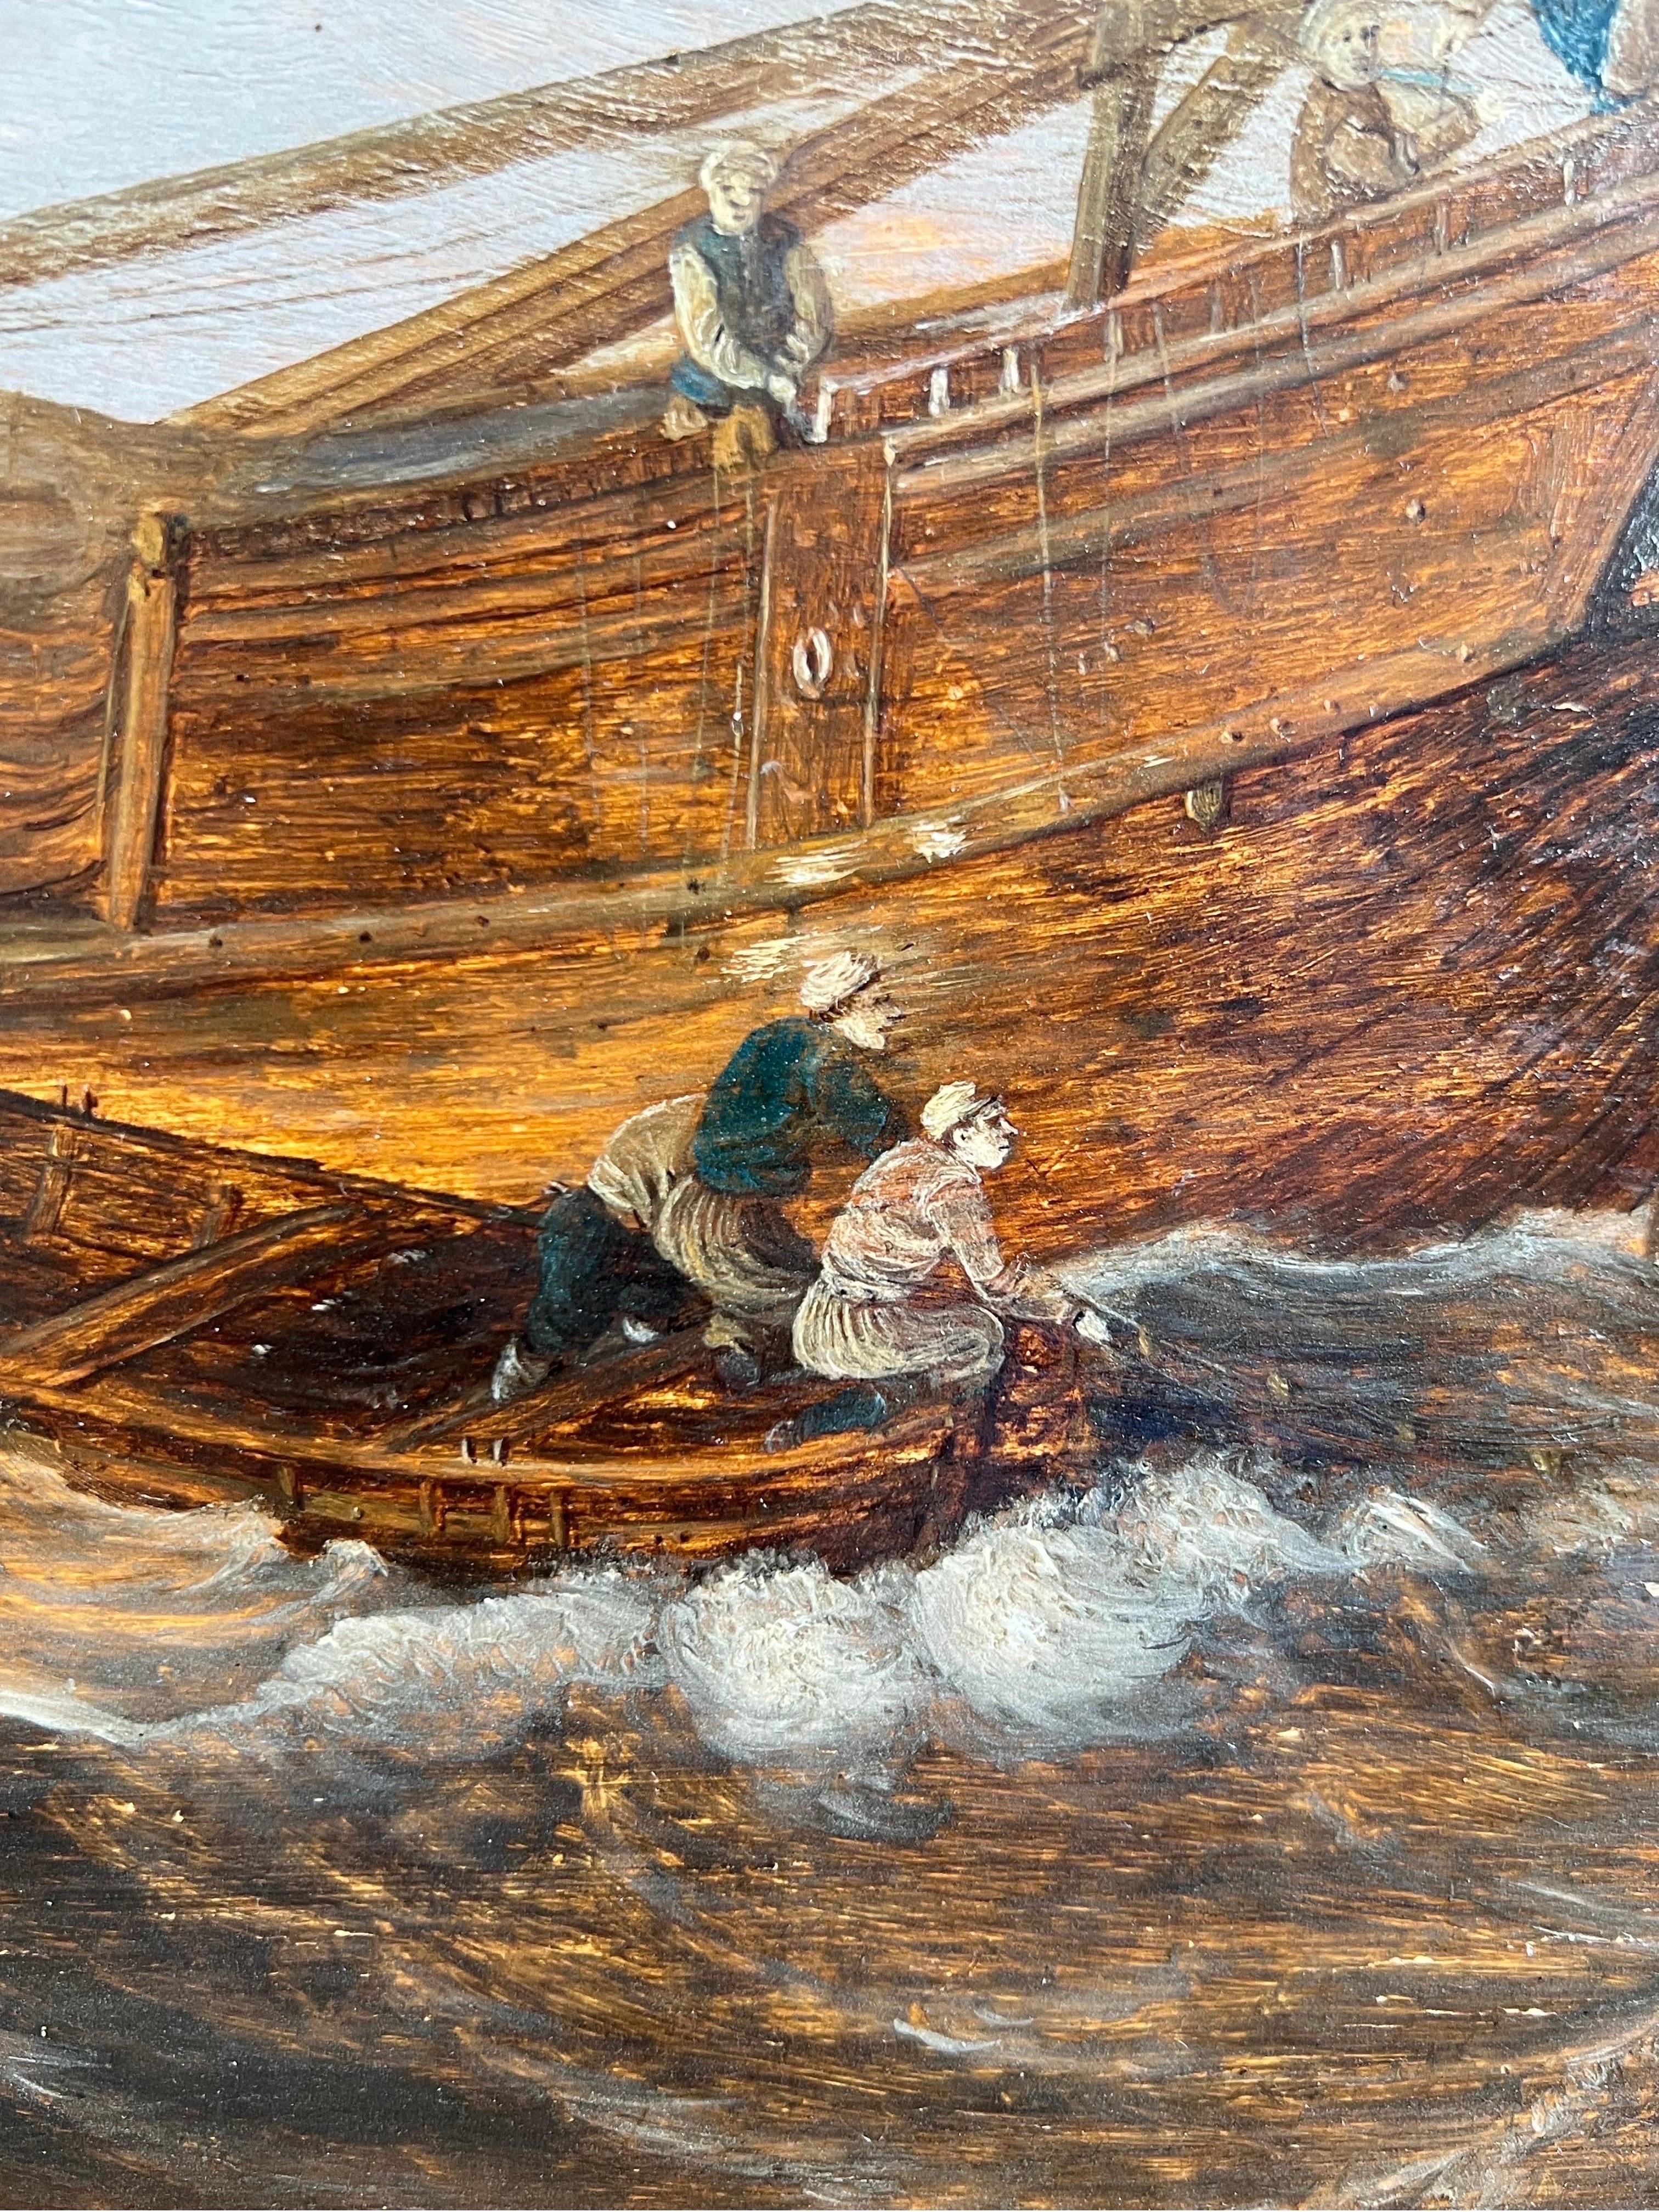 Niederländisches Altmeister-Ölgemälde aus dem 17. Jahrhundert, Stürmische See mit Booten, darunter eine holländische Hoy und ein Packet-Boat

Das vorliegende Gemälde ist eine friedliche, aber sehr lebendige Seelandschaft und ein schönes Beispiel für